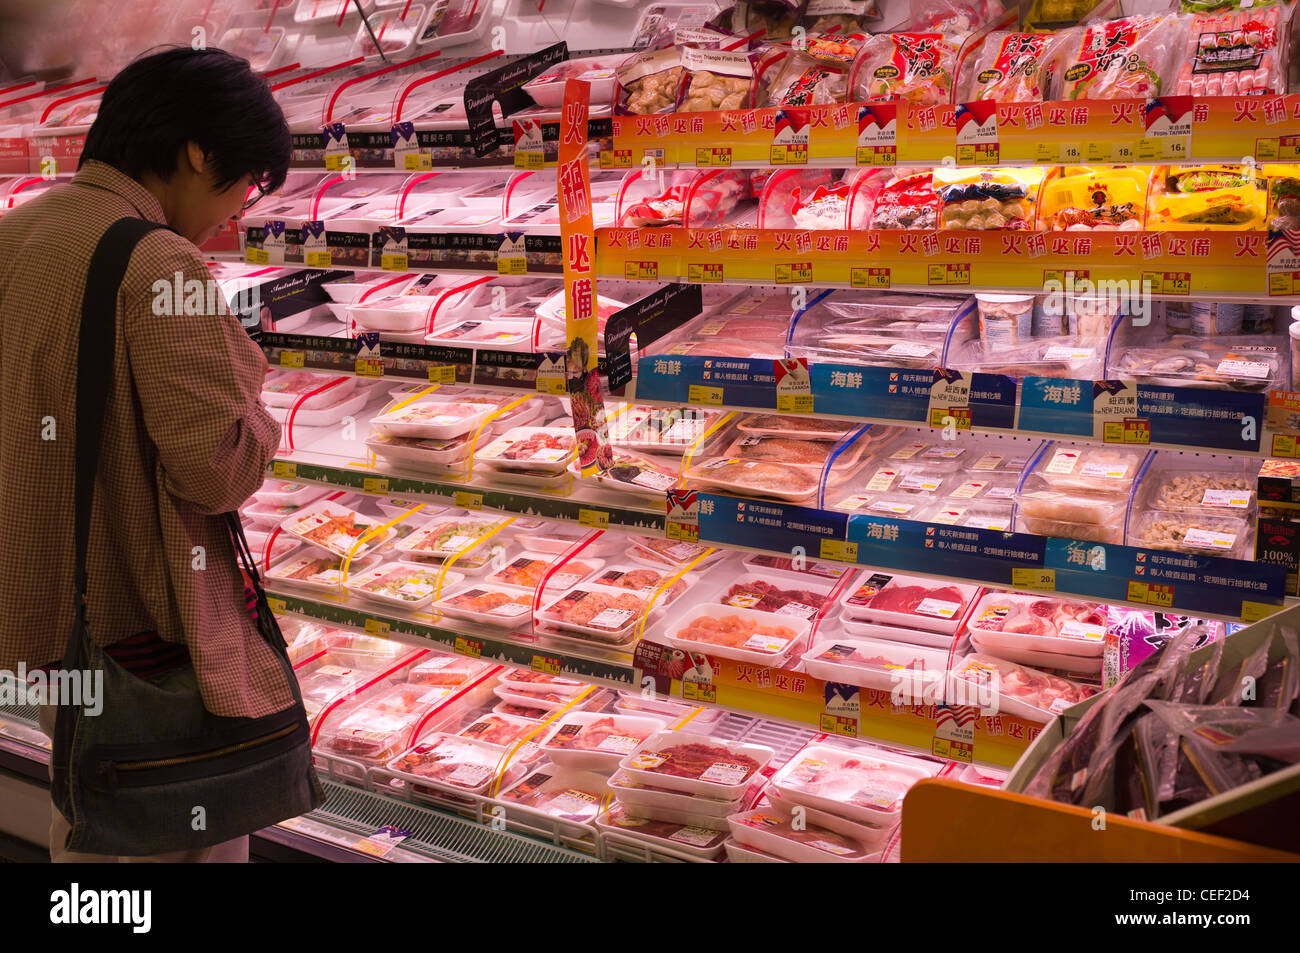 dh Wellcome Supermarkt CAUSEWAY BAY HONGKONG Chinesische Shopper Metzger Fleisch china Dame Einkaufen Lebensmittel Regal Produkte Paket Frau Stockfoto